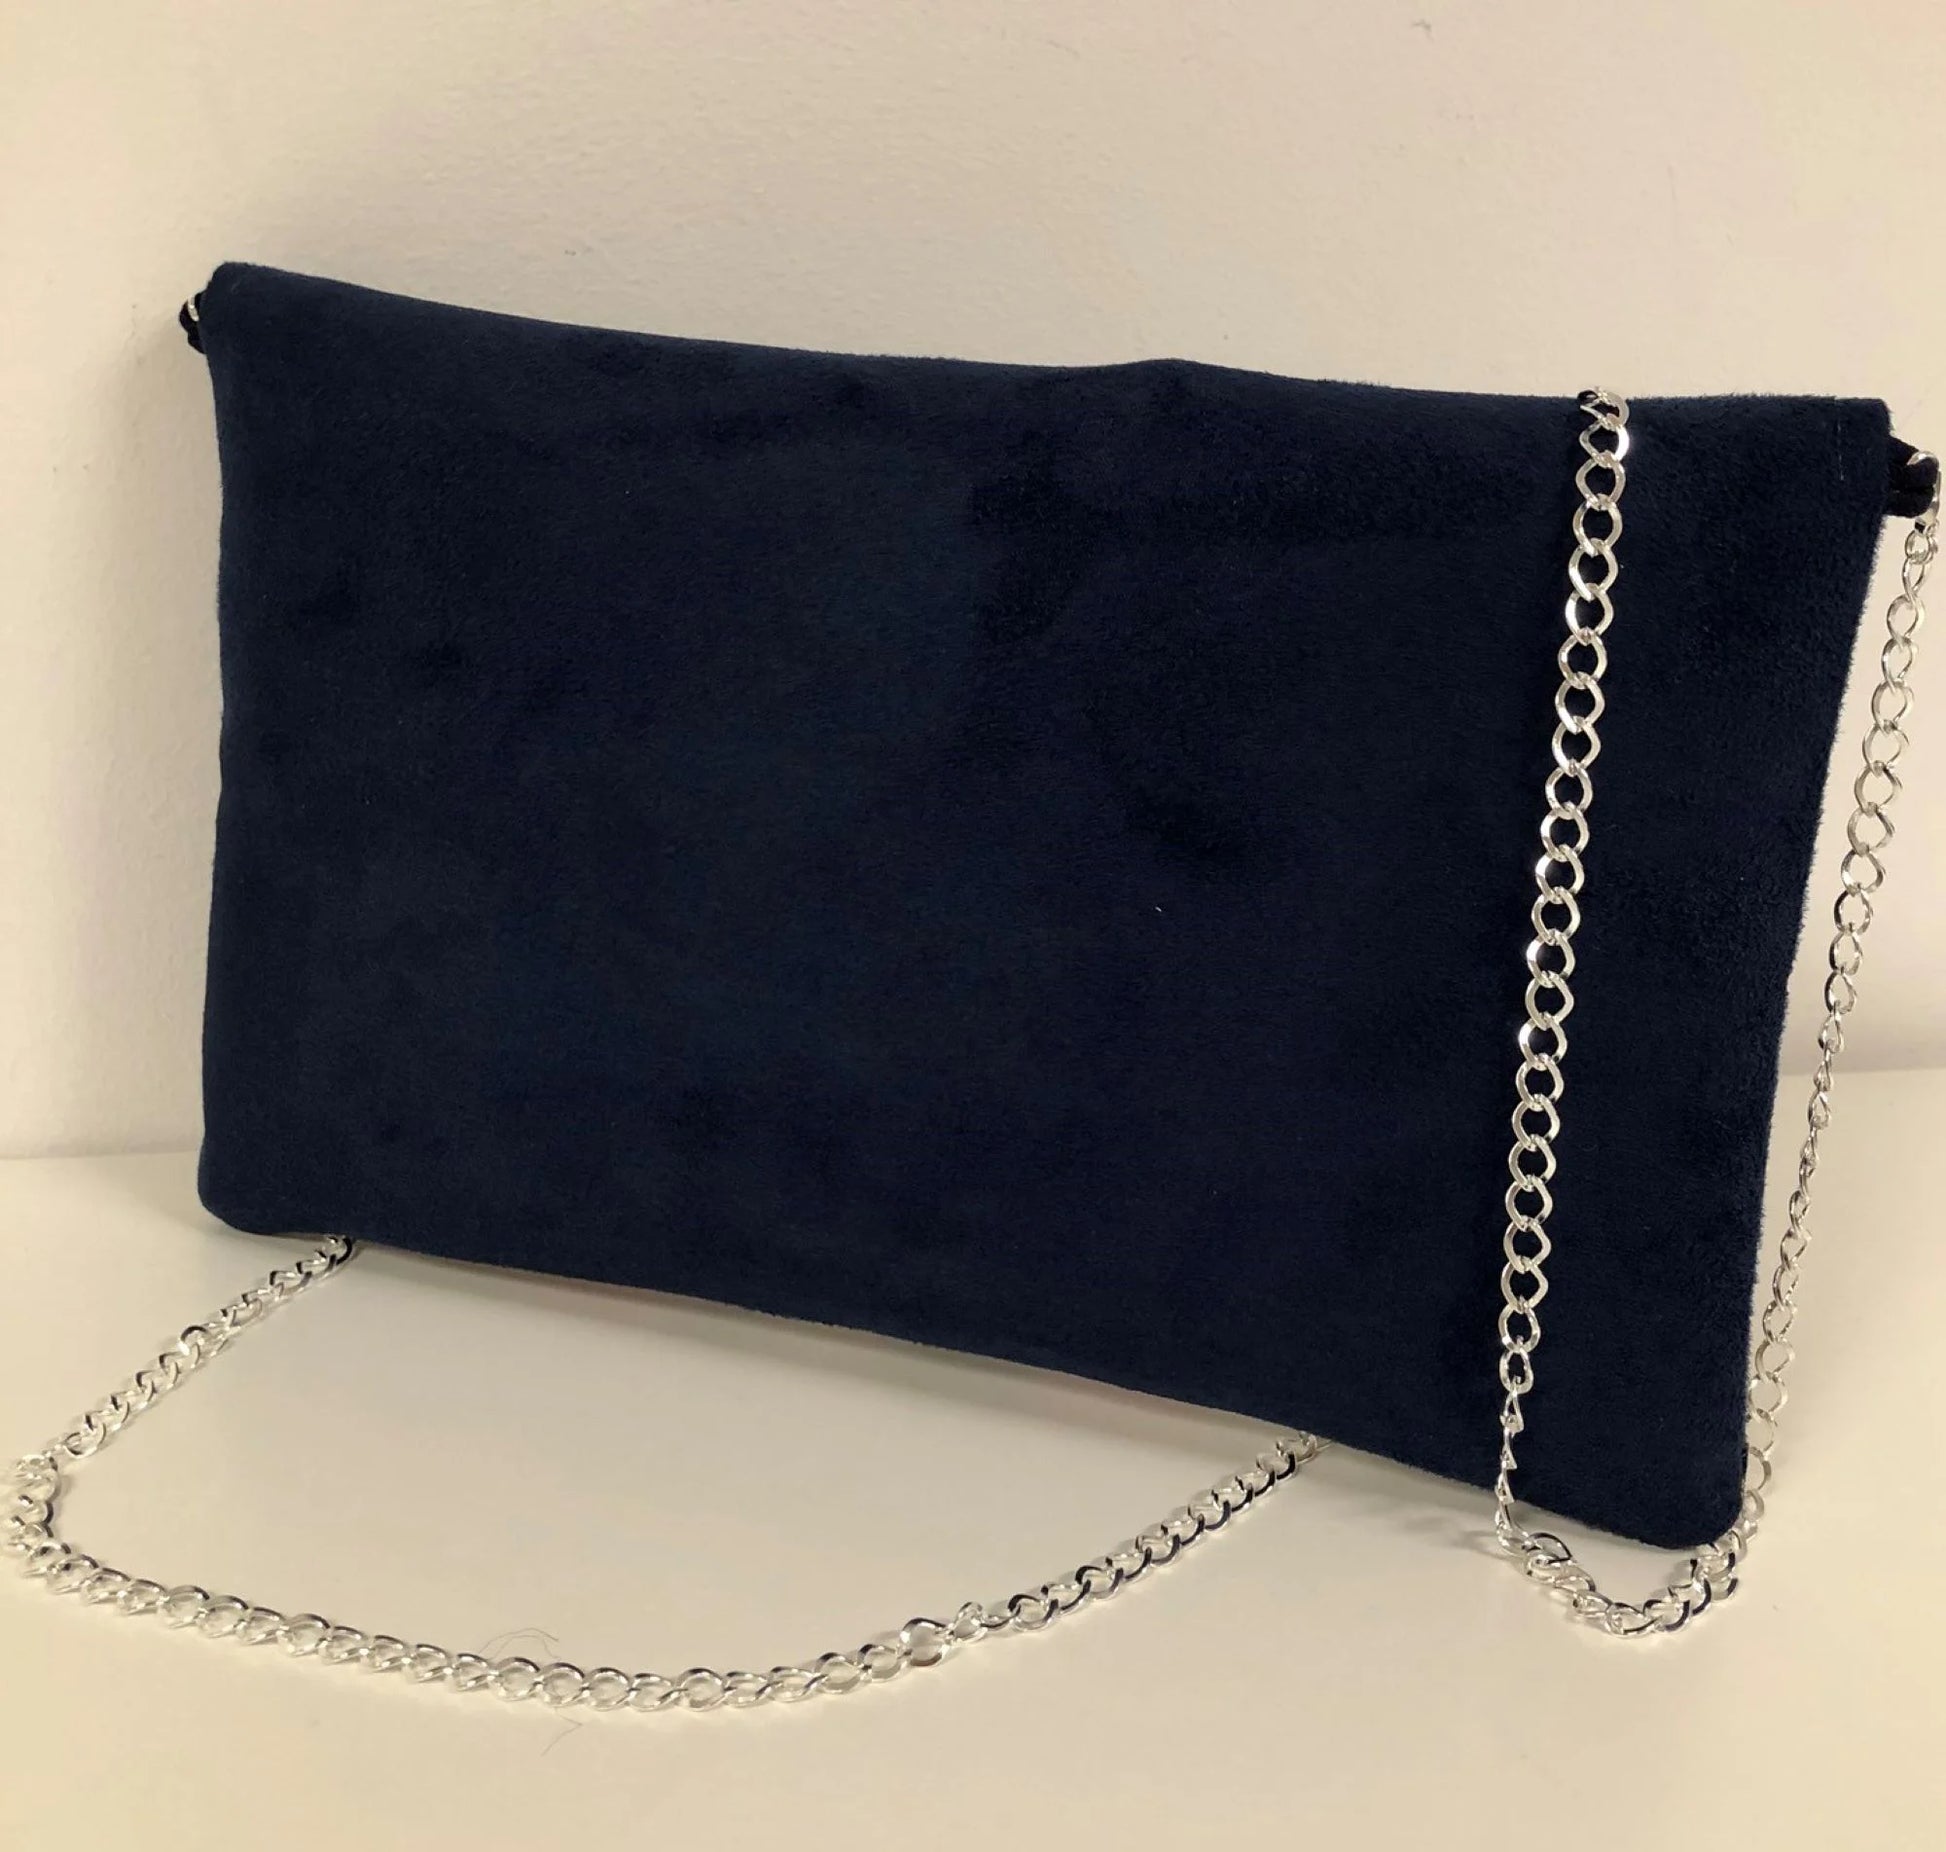 Le sac pochette Isa bleu marine et blanc sans paillettes, vue arrière.